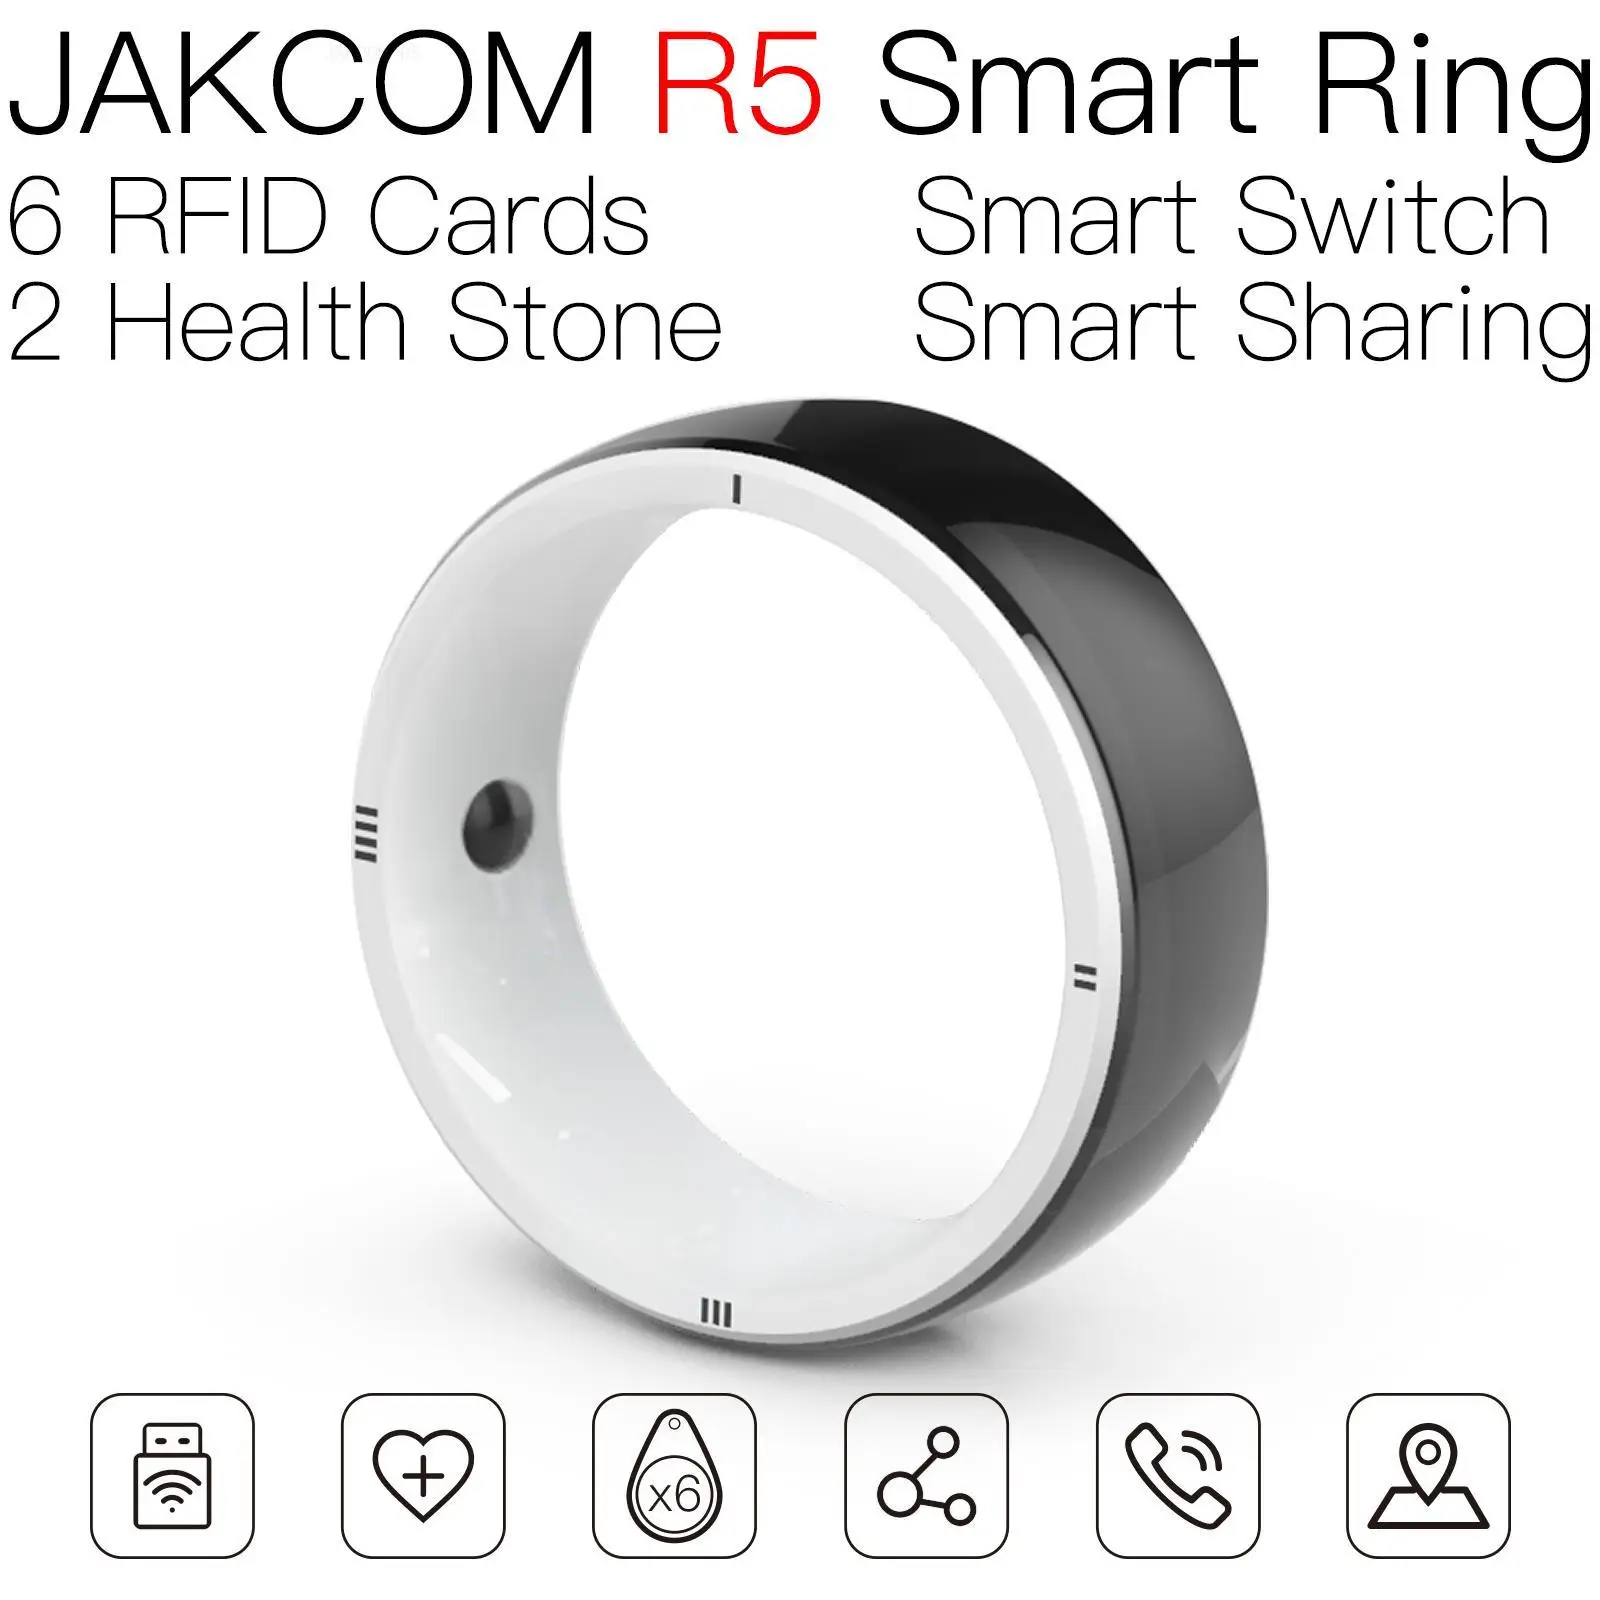 JAKCOM R5 Smart Ring - новый продукт с картой доступа для защиты безопасности 303006